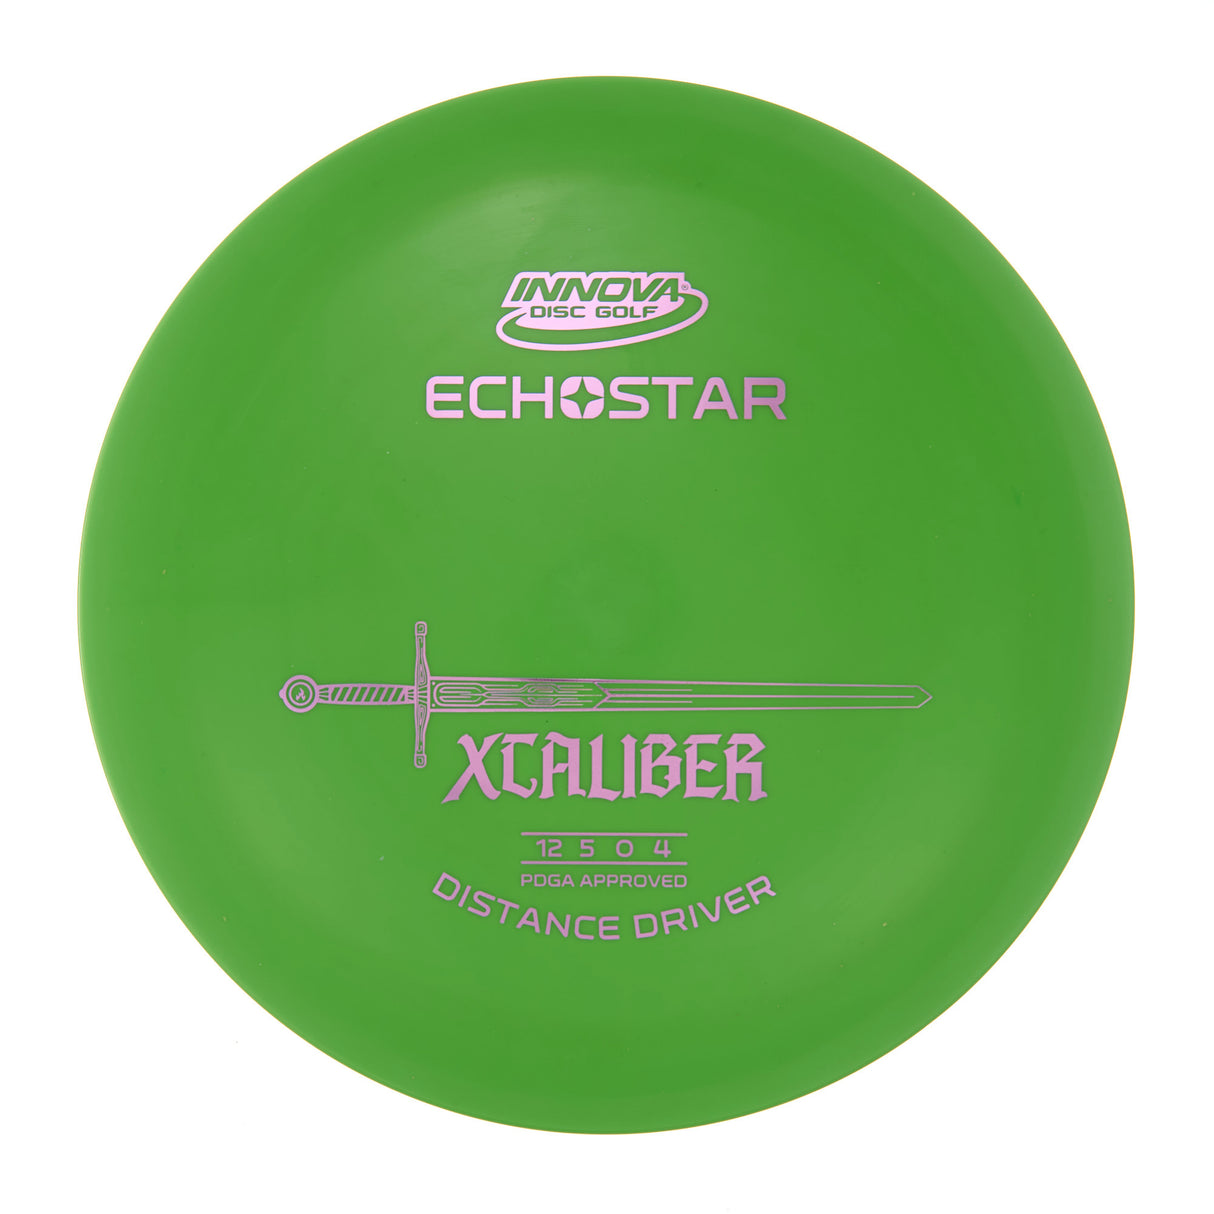 Innova XCaliber - Echo Star  174g | Style 0006